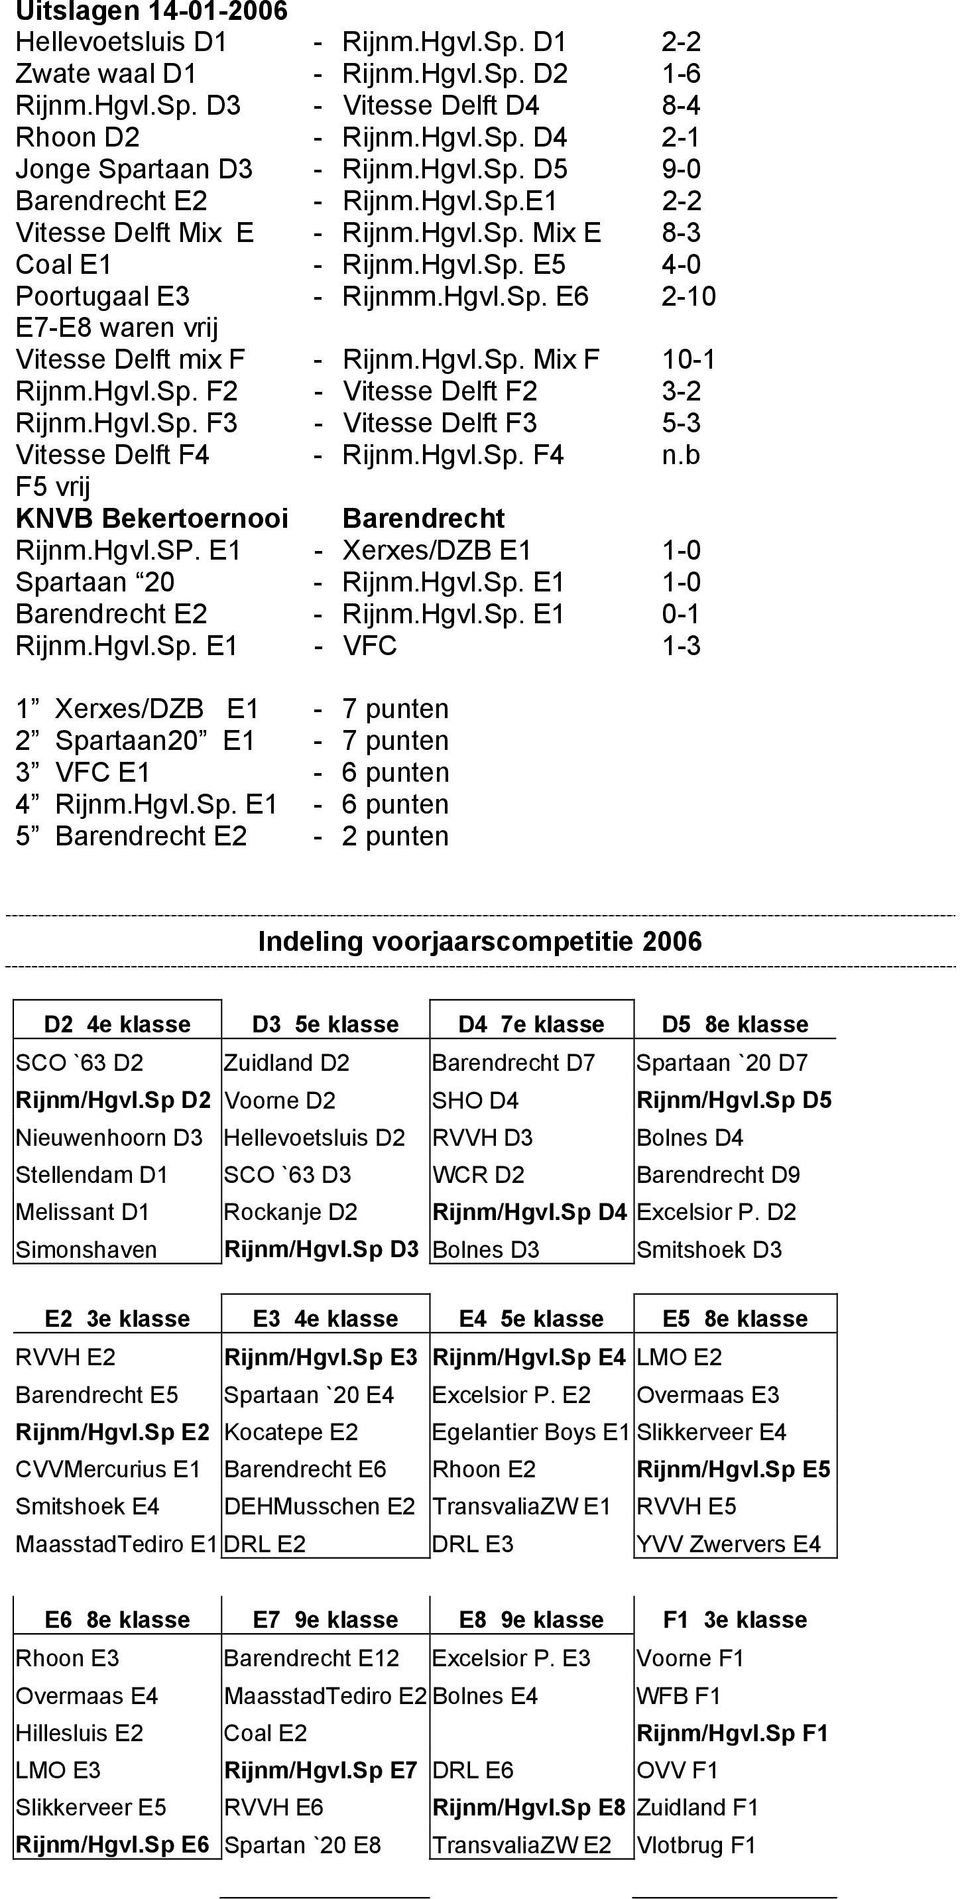 Hgvl.Sp. Mix F 10-1 Rijnm.Hgvl.Sp. F2 - Vitesse Delft F2 3-2 Rijnm.Hgvl.Sp. F3 - Vitesse Delft F3 5-3 Vitesse Delft F4 - Rijnm.Hgvl.Sp. F4 n.b F5 vrij KNVB Bekertoernooi Barendrecht Rijnm.Hgvl.SP.